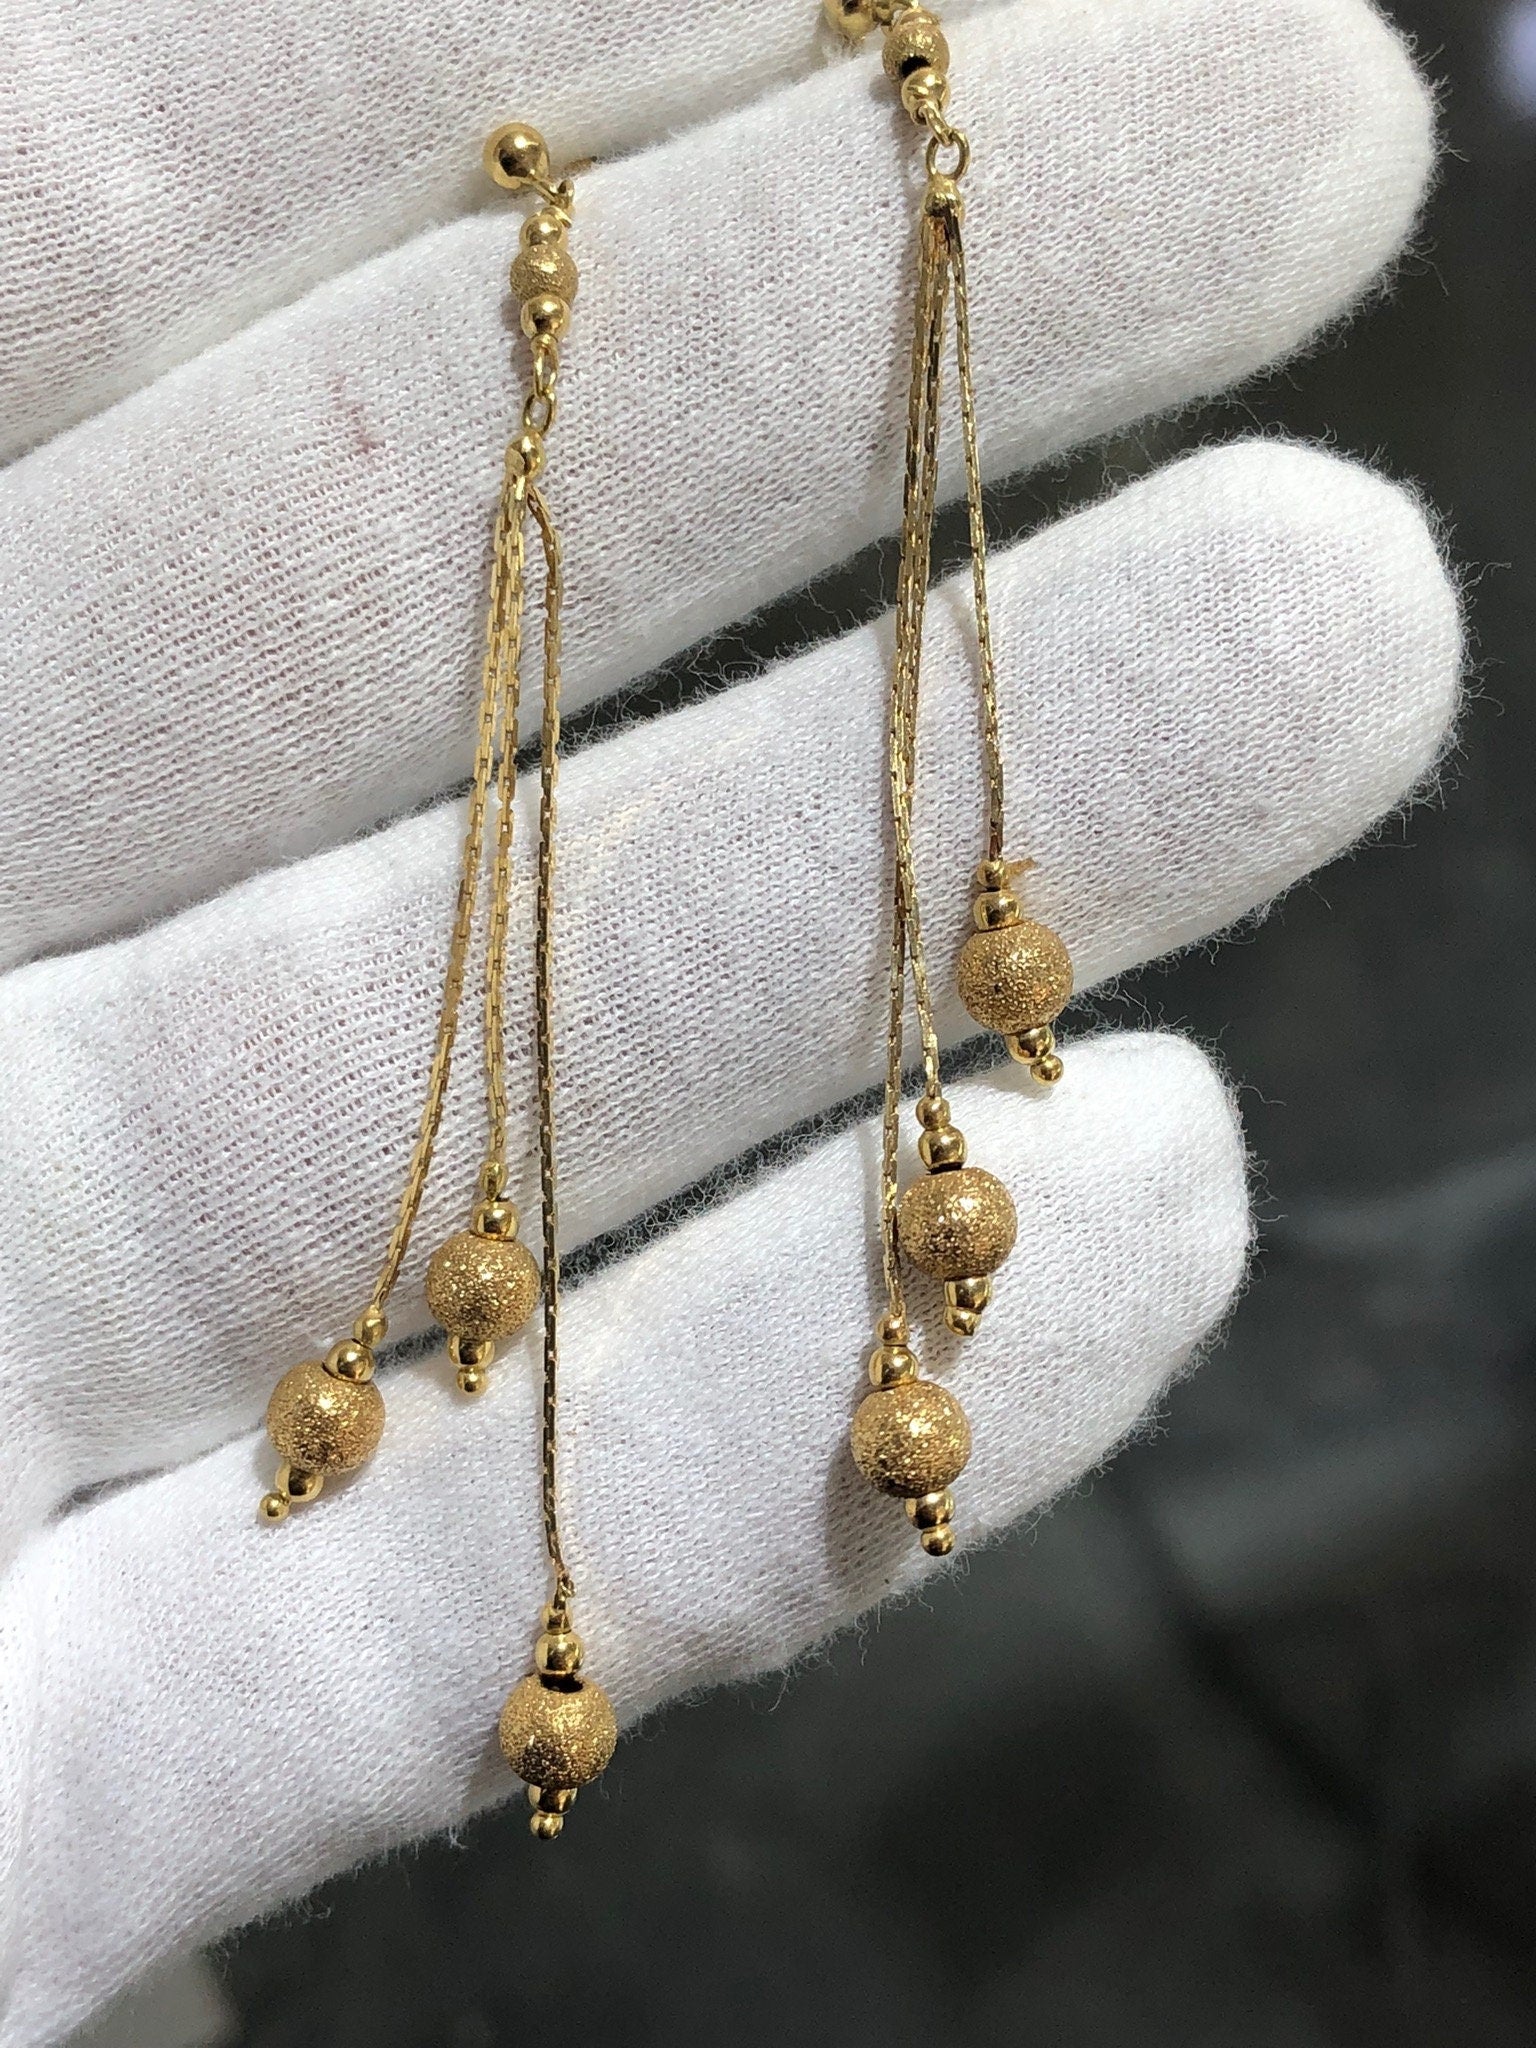 LIV 14k Yellow Gold Diamond Cut Long Chandelier Design Stud Earrings Butterfly Backs